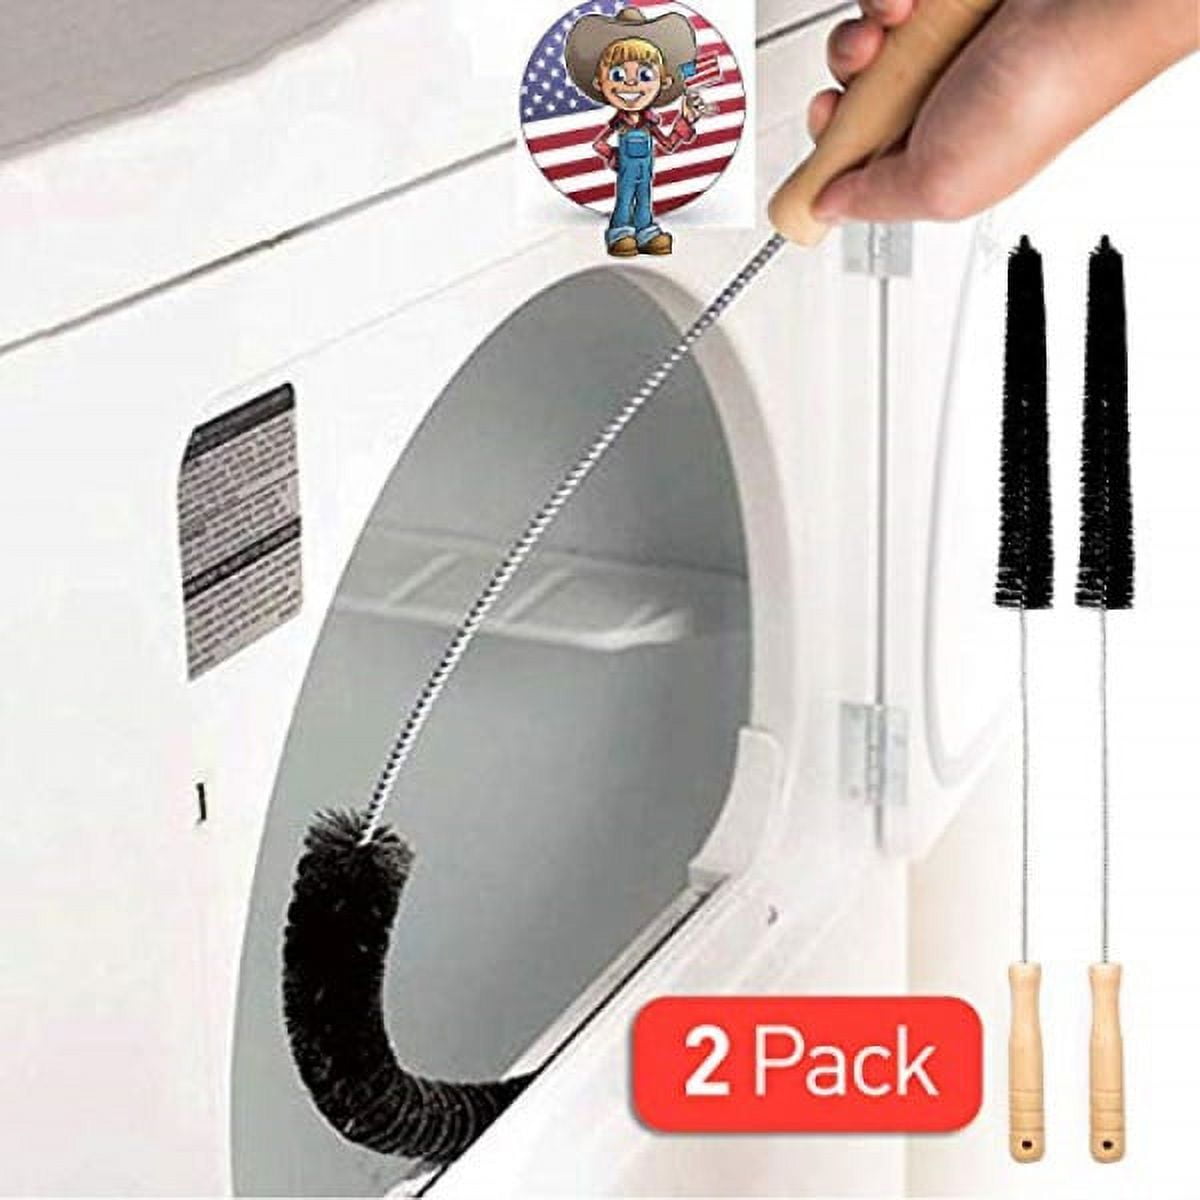 Vanitek Dryer Vent Cleaner Lint Brush, Long Flexible Refrigerator Coil Cleaning Brush, 26 inch - 2 Pk